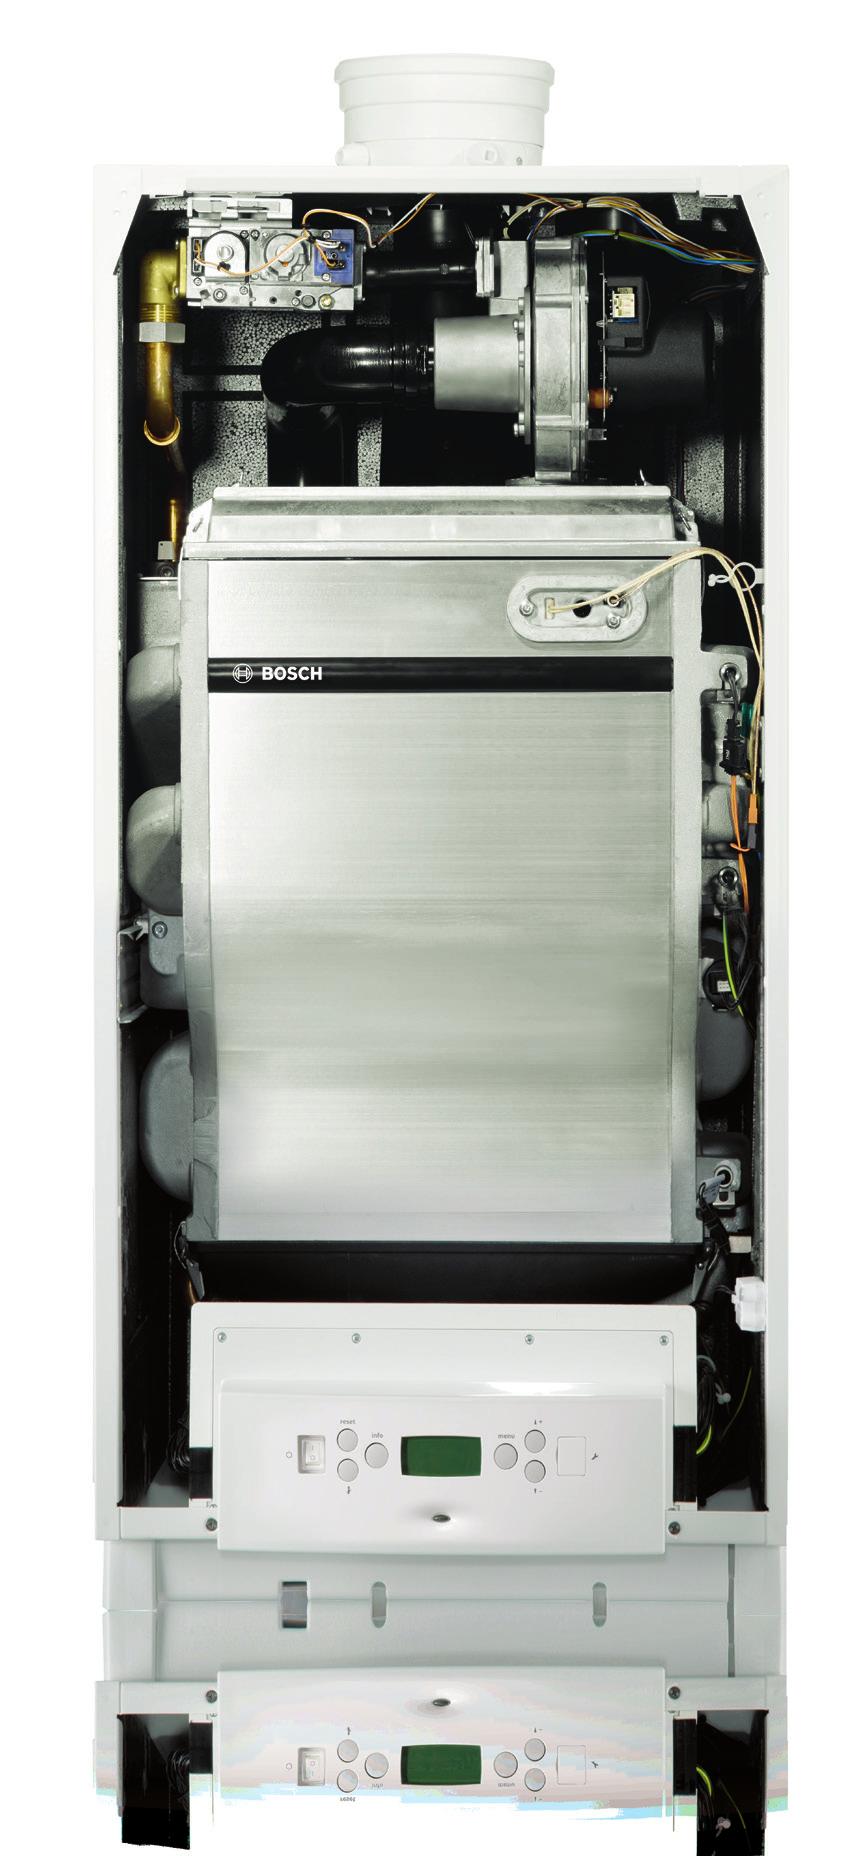 Grejanje sa energetski najefikasnijim rešenjima 9 Gasni kotao Condens 5000 W predstavlja najmoderniji kondenzacioni uređaj svoje generacije kompanije Bosch.